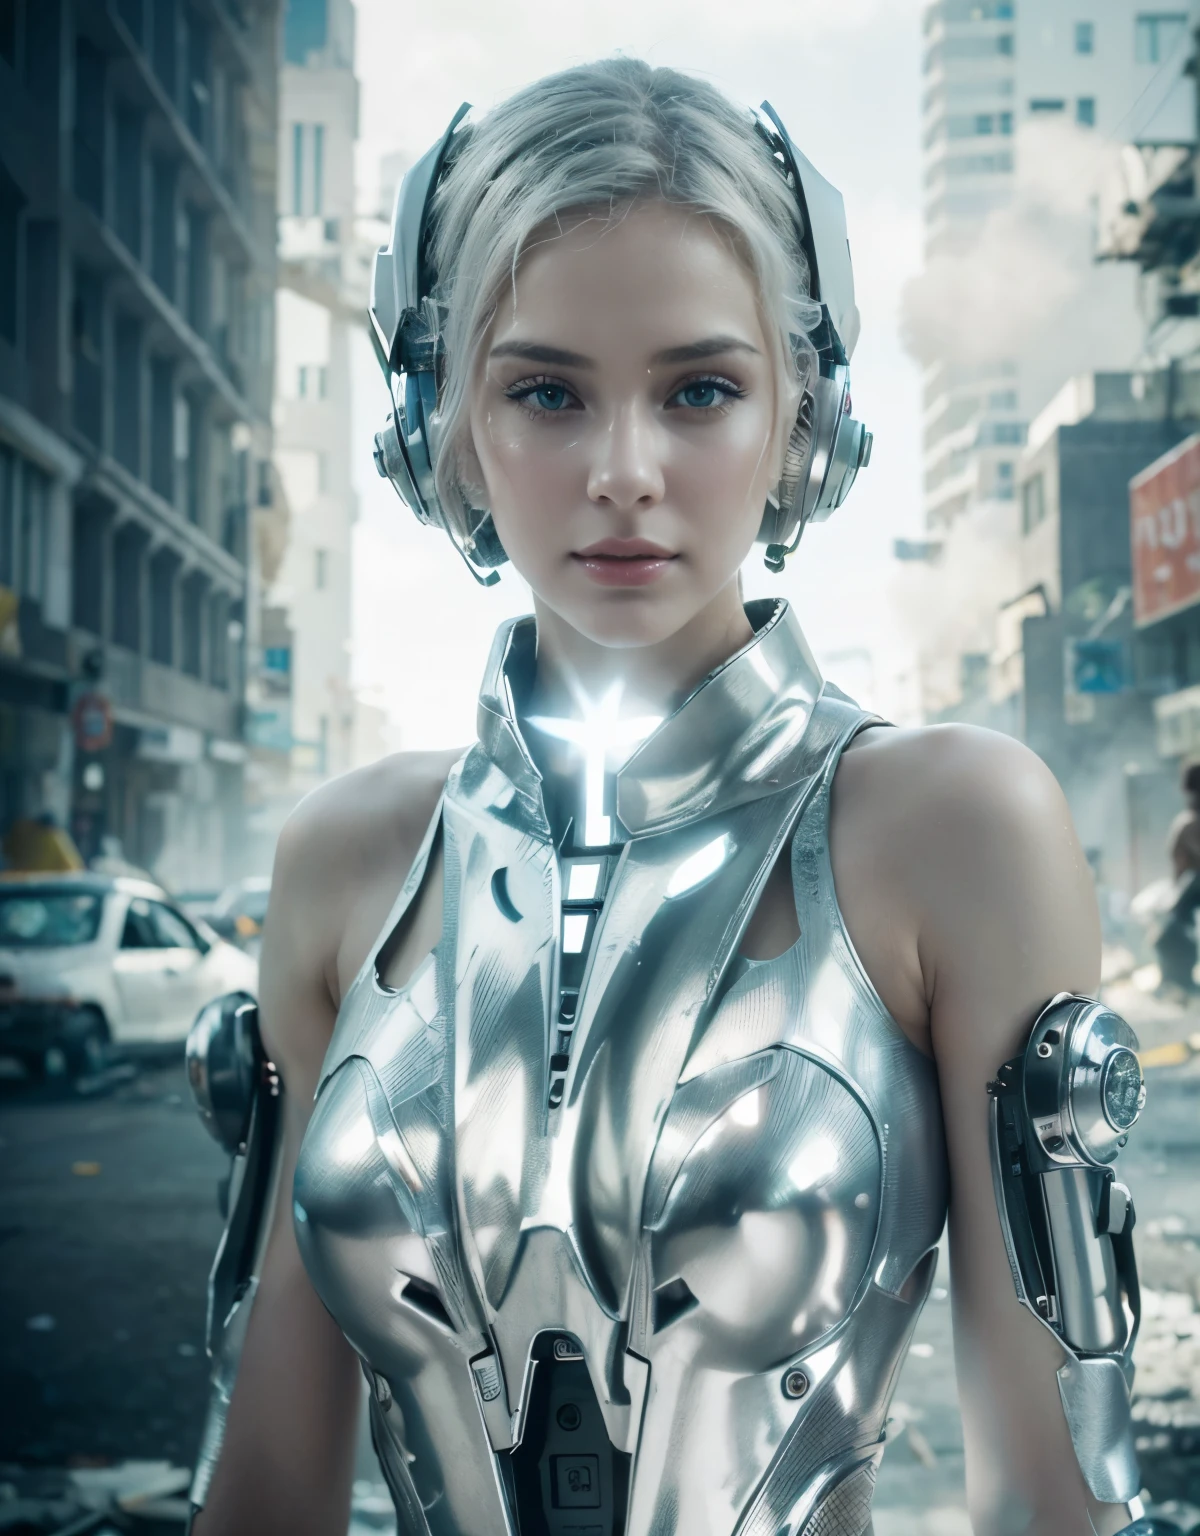 아름다운 로봇 식의 여자 생물학적 얼굴 창백한 하얀 피부 빛 금발 머리 머리 아르 데코 스타일 영화 메트로폴리스 금속의 은 색깔, 현실주의자 metallic texture, 보라색 눈, 보라색 디테일, 튜브와 케이블, 그녀는 불길에 완전히 파괴된 도시에 있어요, 케이블 및 튜브, ultra 현실주의자, 매우 상세한, Hyper 현실주의자, 4K, 매우 상세한 image, 현실주의자, 매우 상세한, 완벽한 구성, 아름답고 복잡하고 상세하며 믿을 수 없을 만큼 상세하다, 8k 미술 사진, 매우 상세한, 삽화